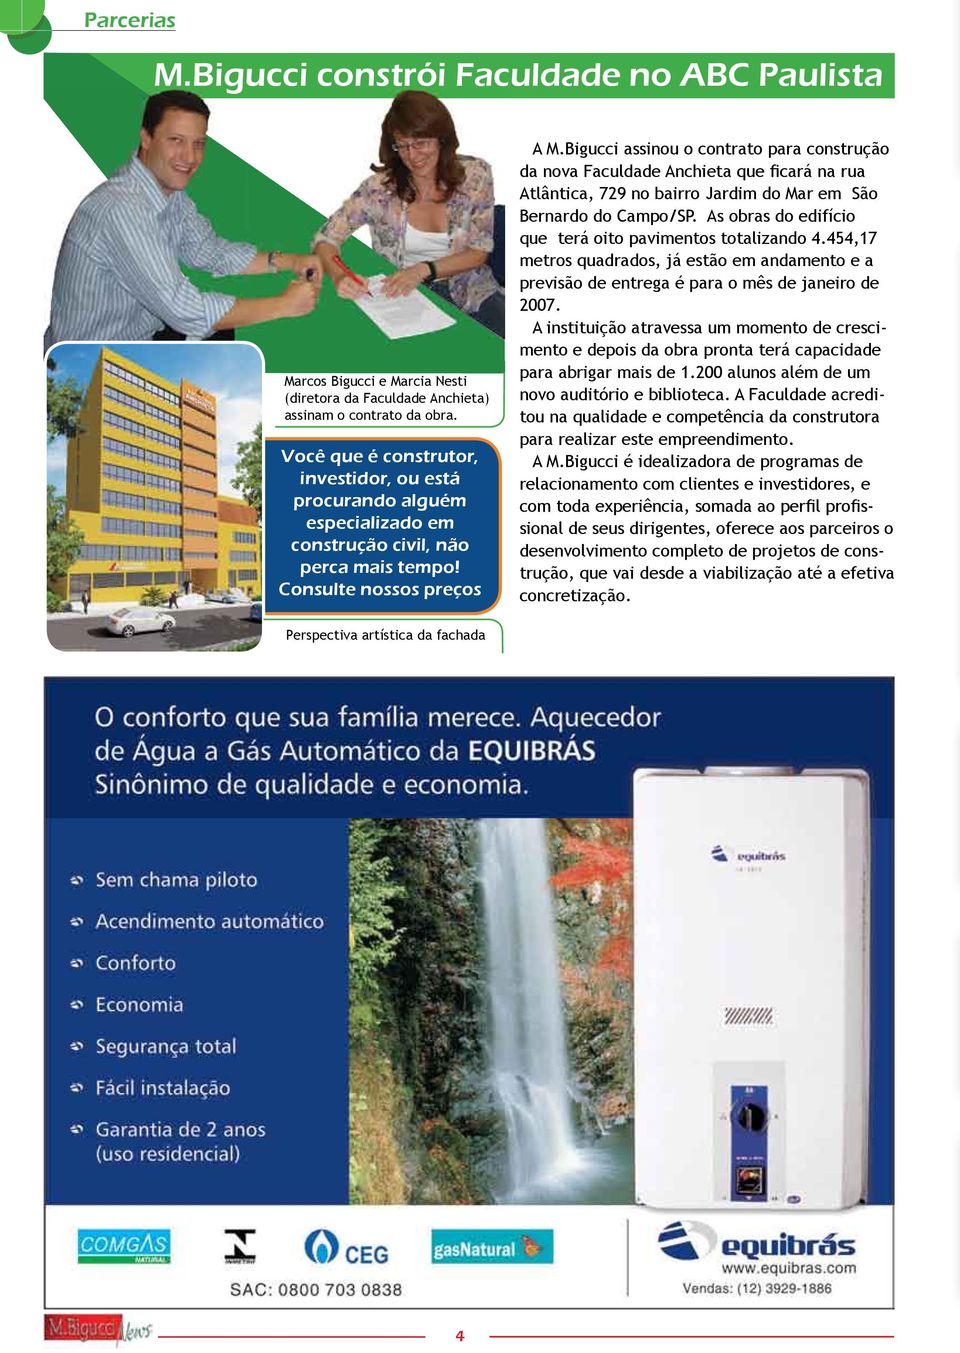 Bigucci assinou o contrato para construção da nova Faculdade Anchieta que ficará na rua Atlântica, 729 no bairro Jardim do Mar em São Bernardo do Campo/SP.